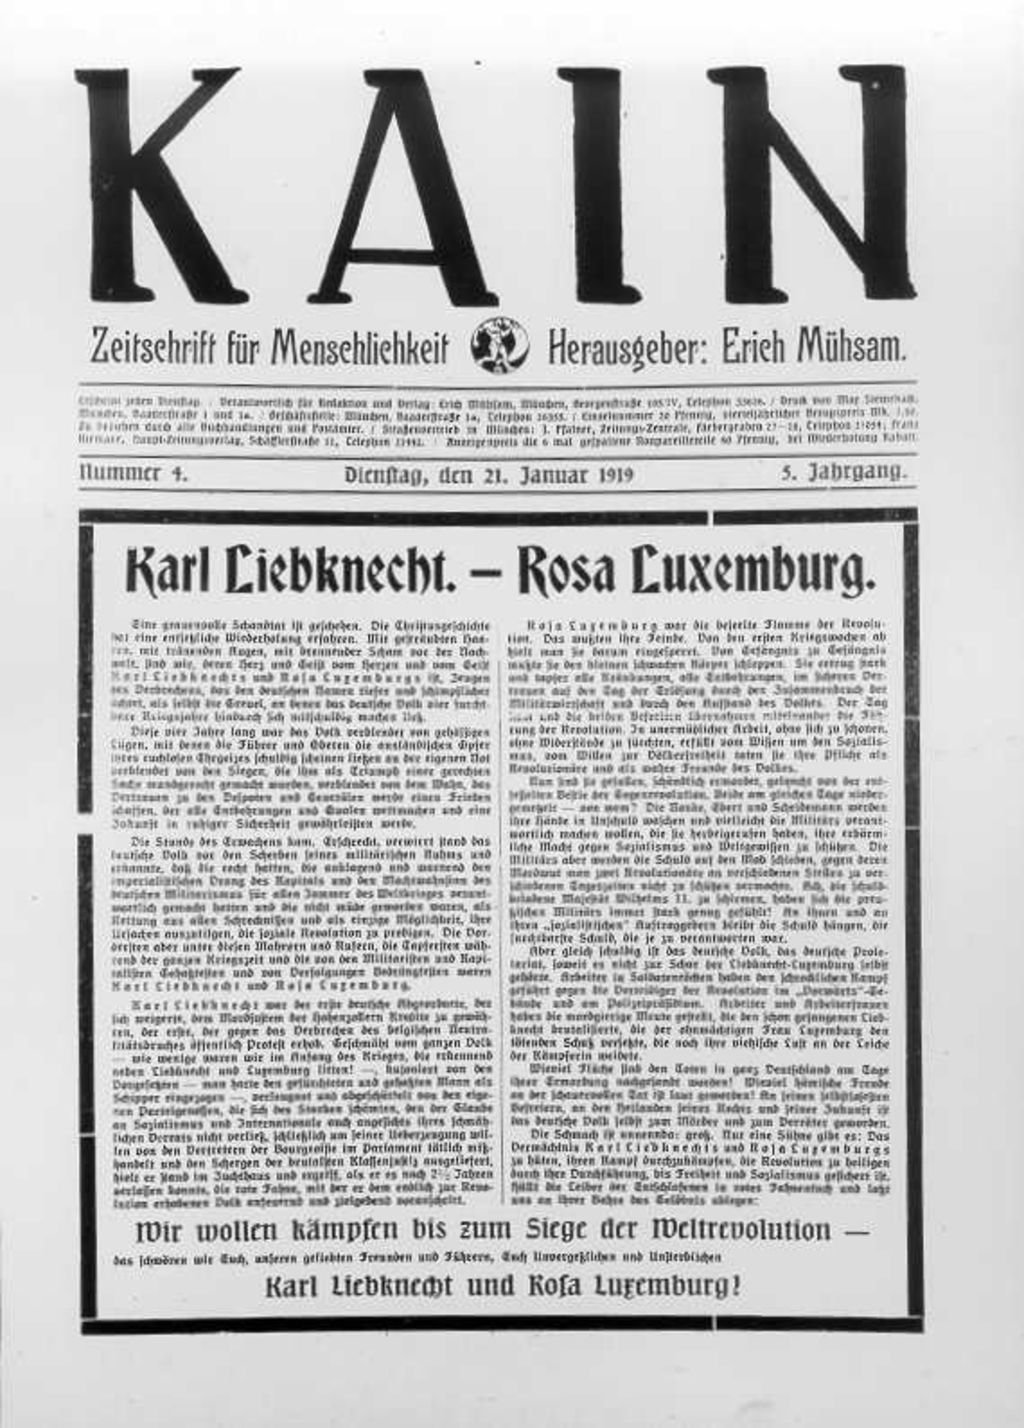 Zeitschrift: Kain, Zeitschrift für Menschlichkeit "Karl Liebknecht. - Rosa Luxemburg.", 1919